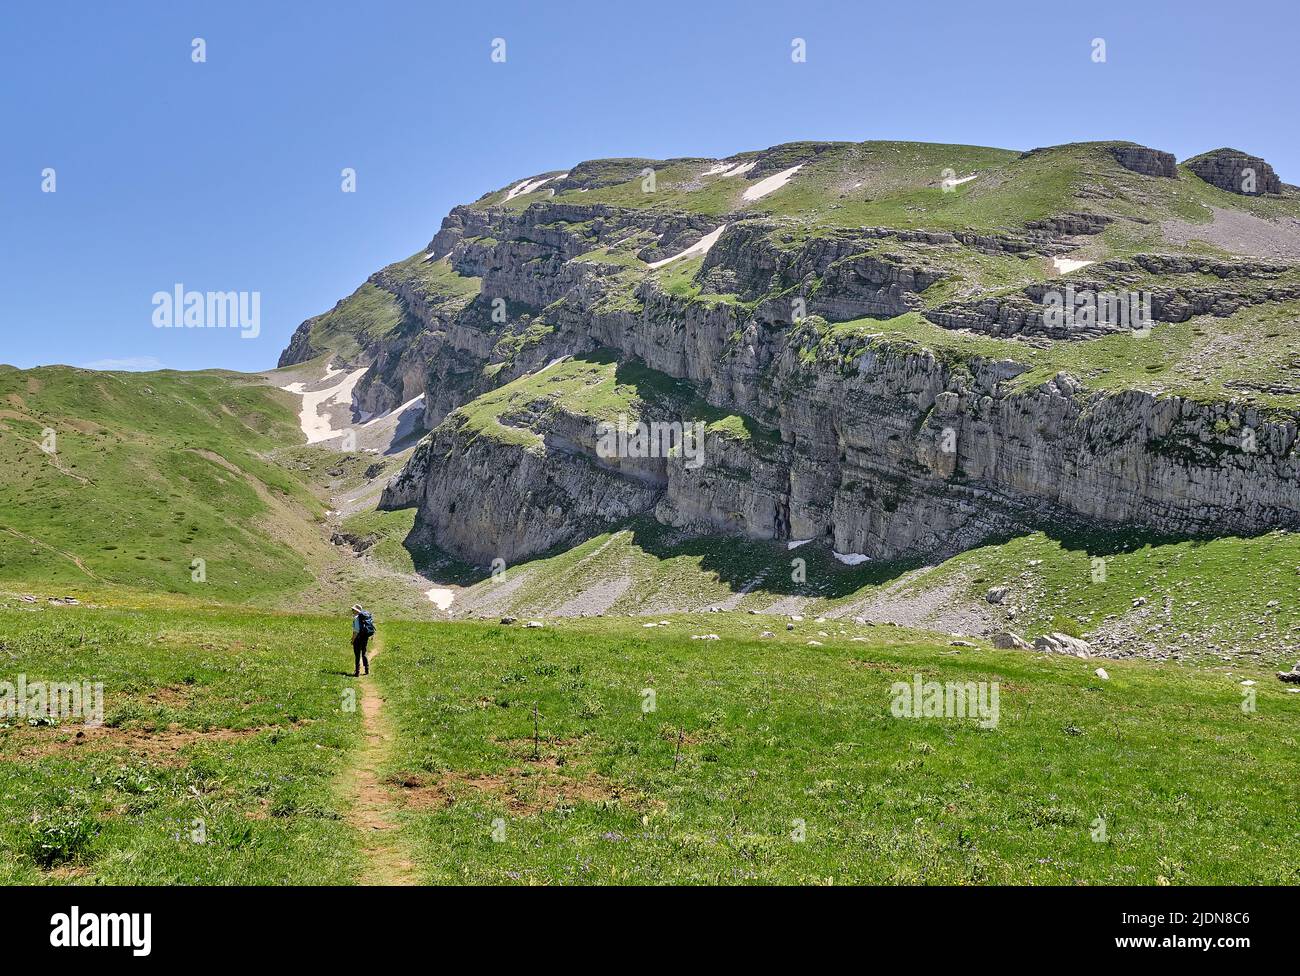 Camminando attraverso l'alto pascolo alpino sulla passeggiata del Lago del Drago sul Monte Timfi nella regione di Zagori nel nord della Grecia Foto Stock